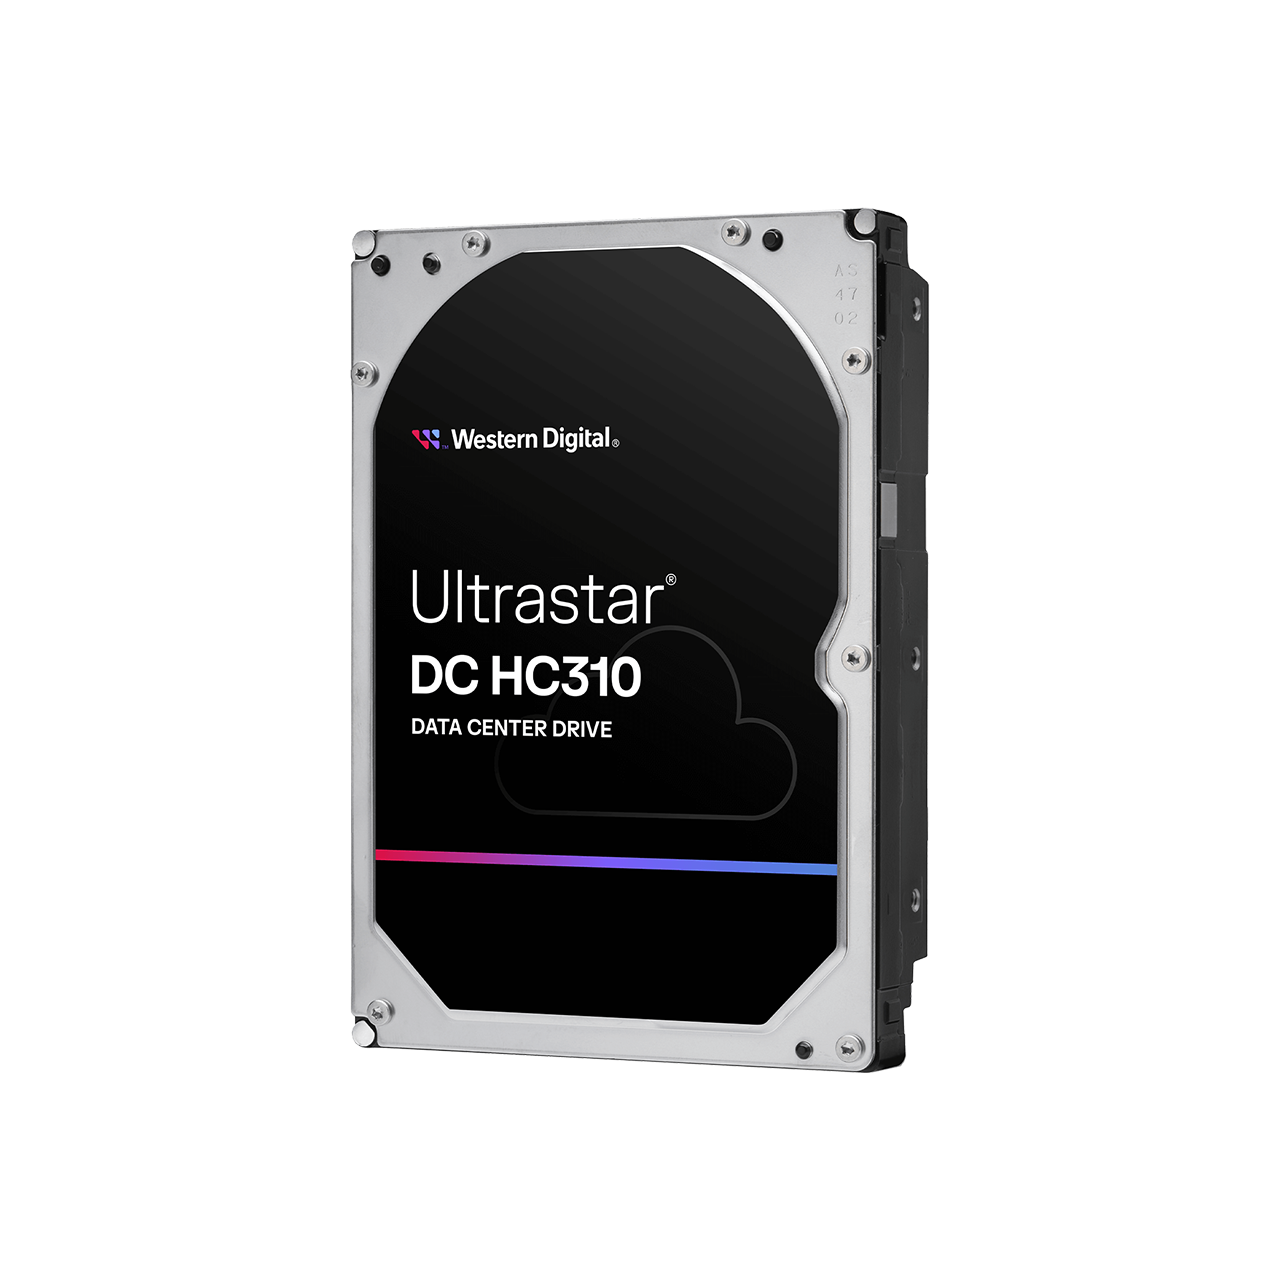 Western Digital 6TB Ultrastar® DC HC310 - 0B36039